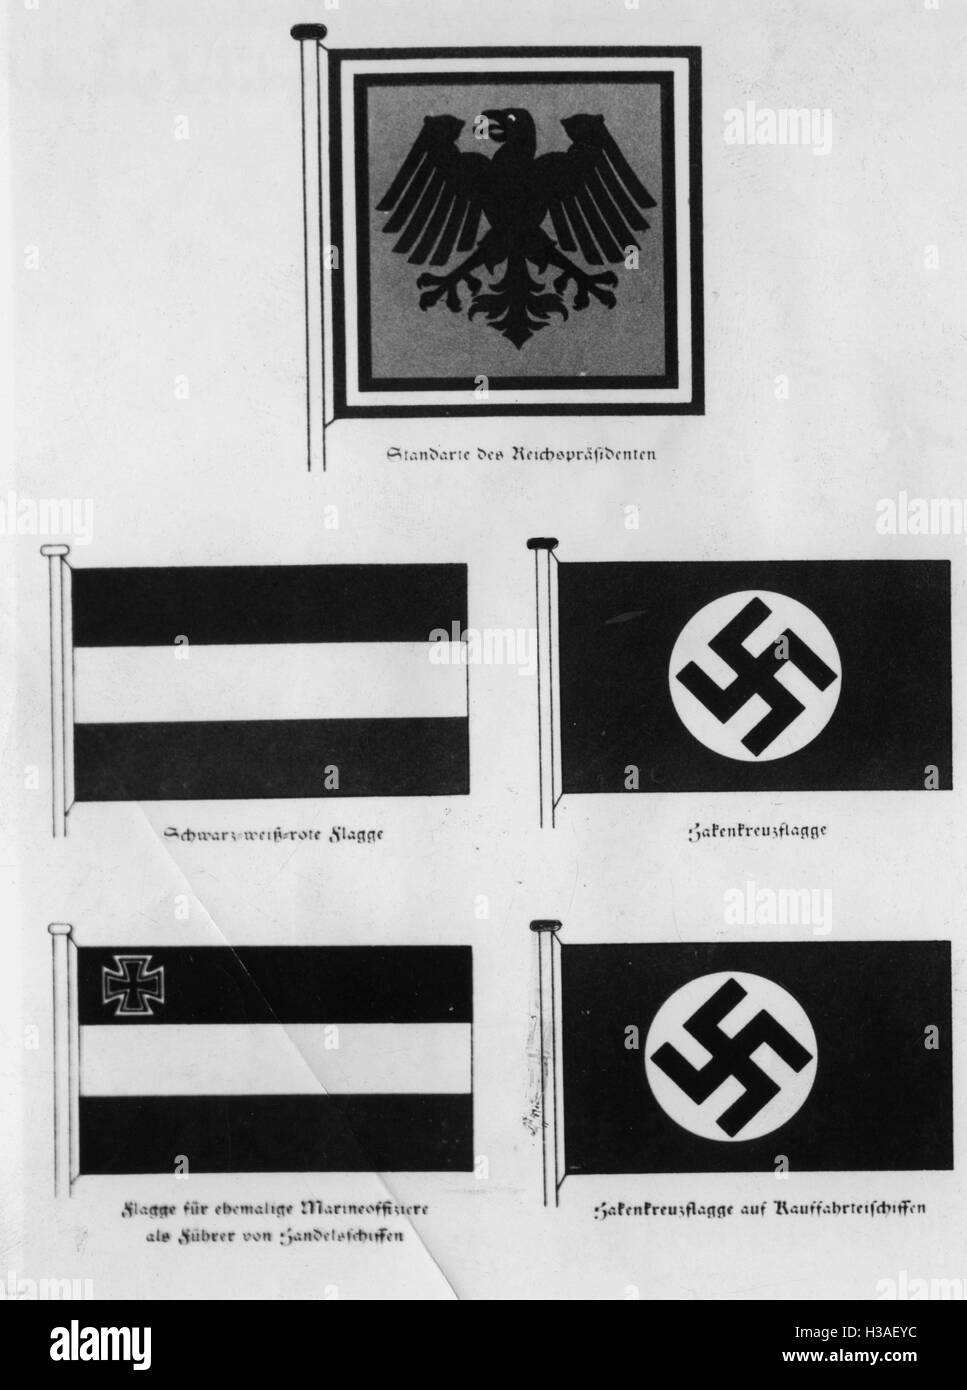 Ilustración de la bandera nazi, 1933. Foto de stock